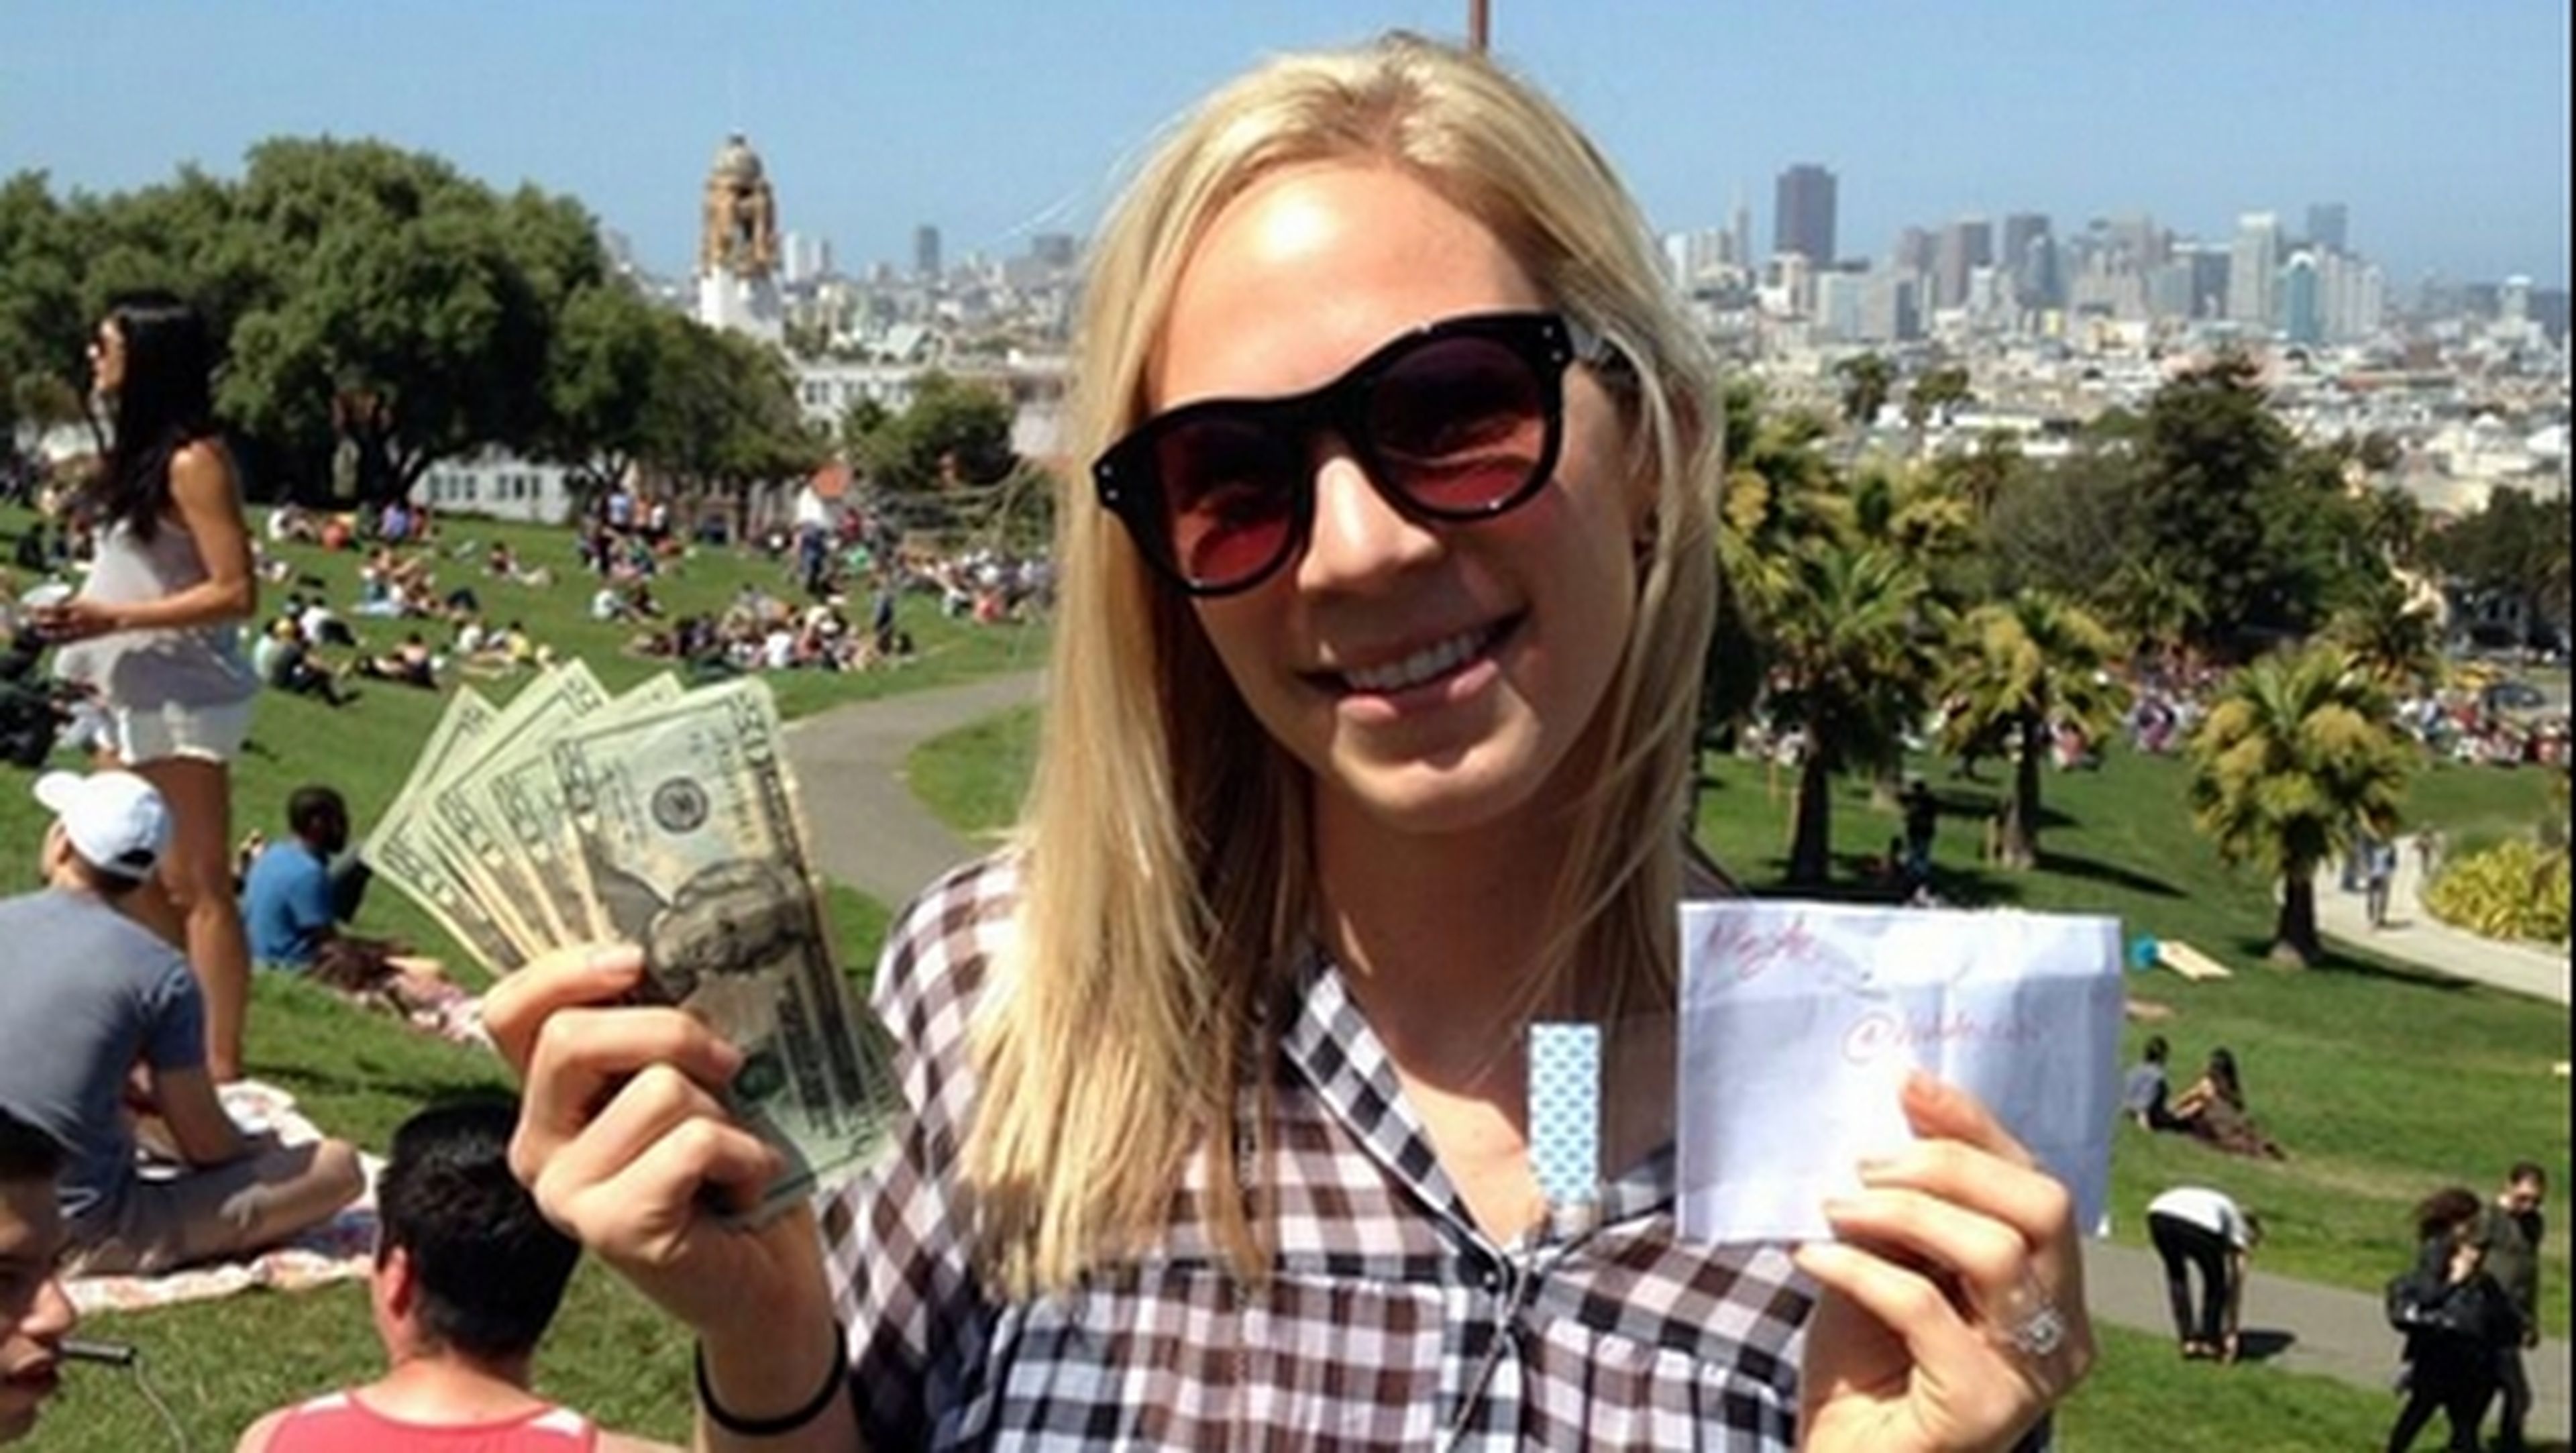 Millonario anónimo está escondiendo docenas de sobres con dinero en San Francisco, y ofrece pistas en Twitter para encontrarlos.